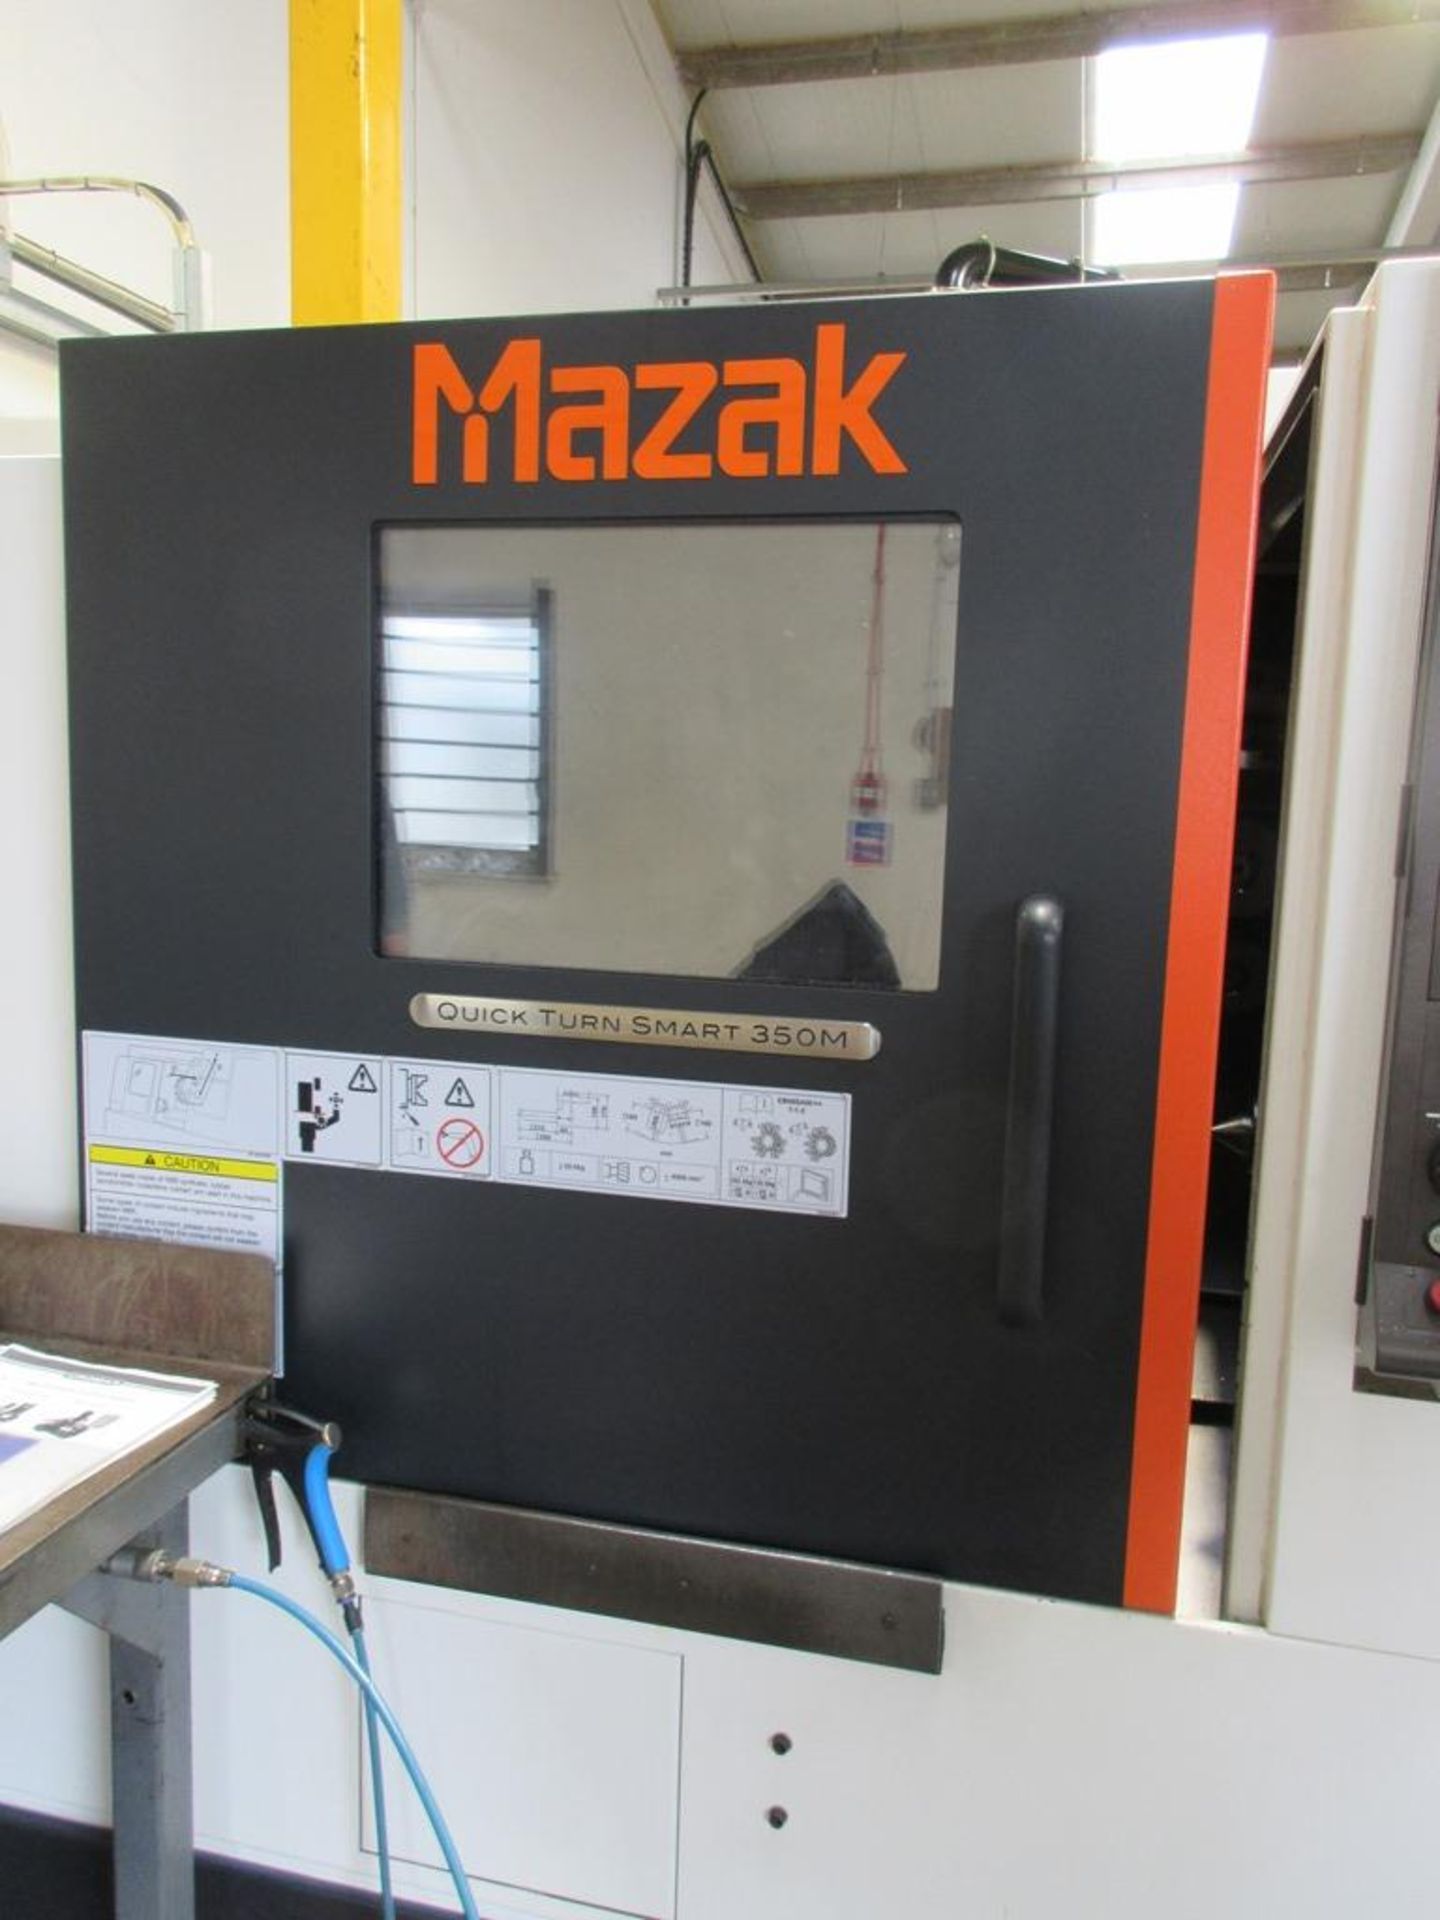 Mazak Quick Turn Smart 350M CNC slant bed turning centre (2015) - Image 4 of 14